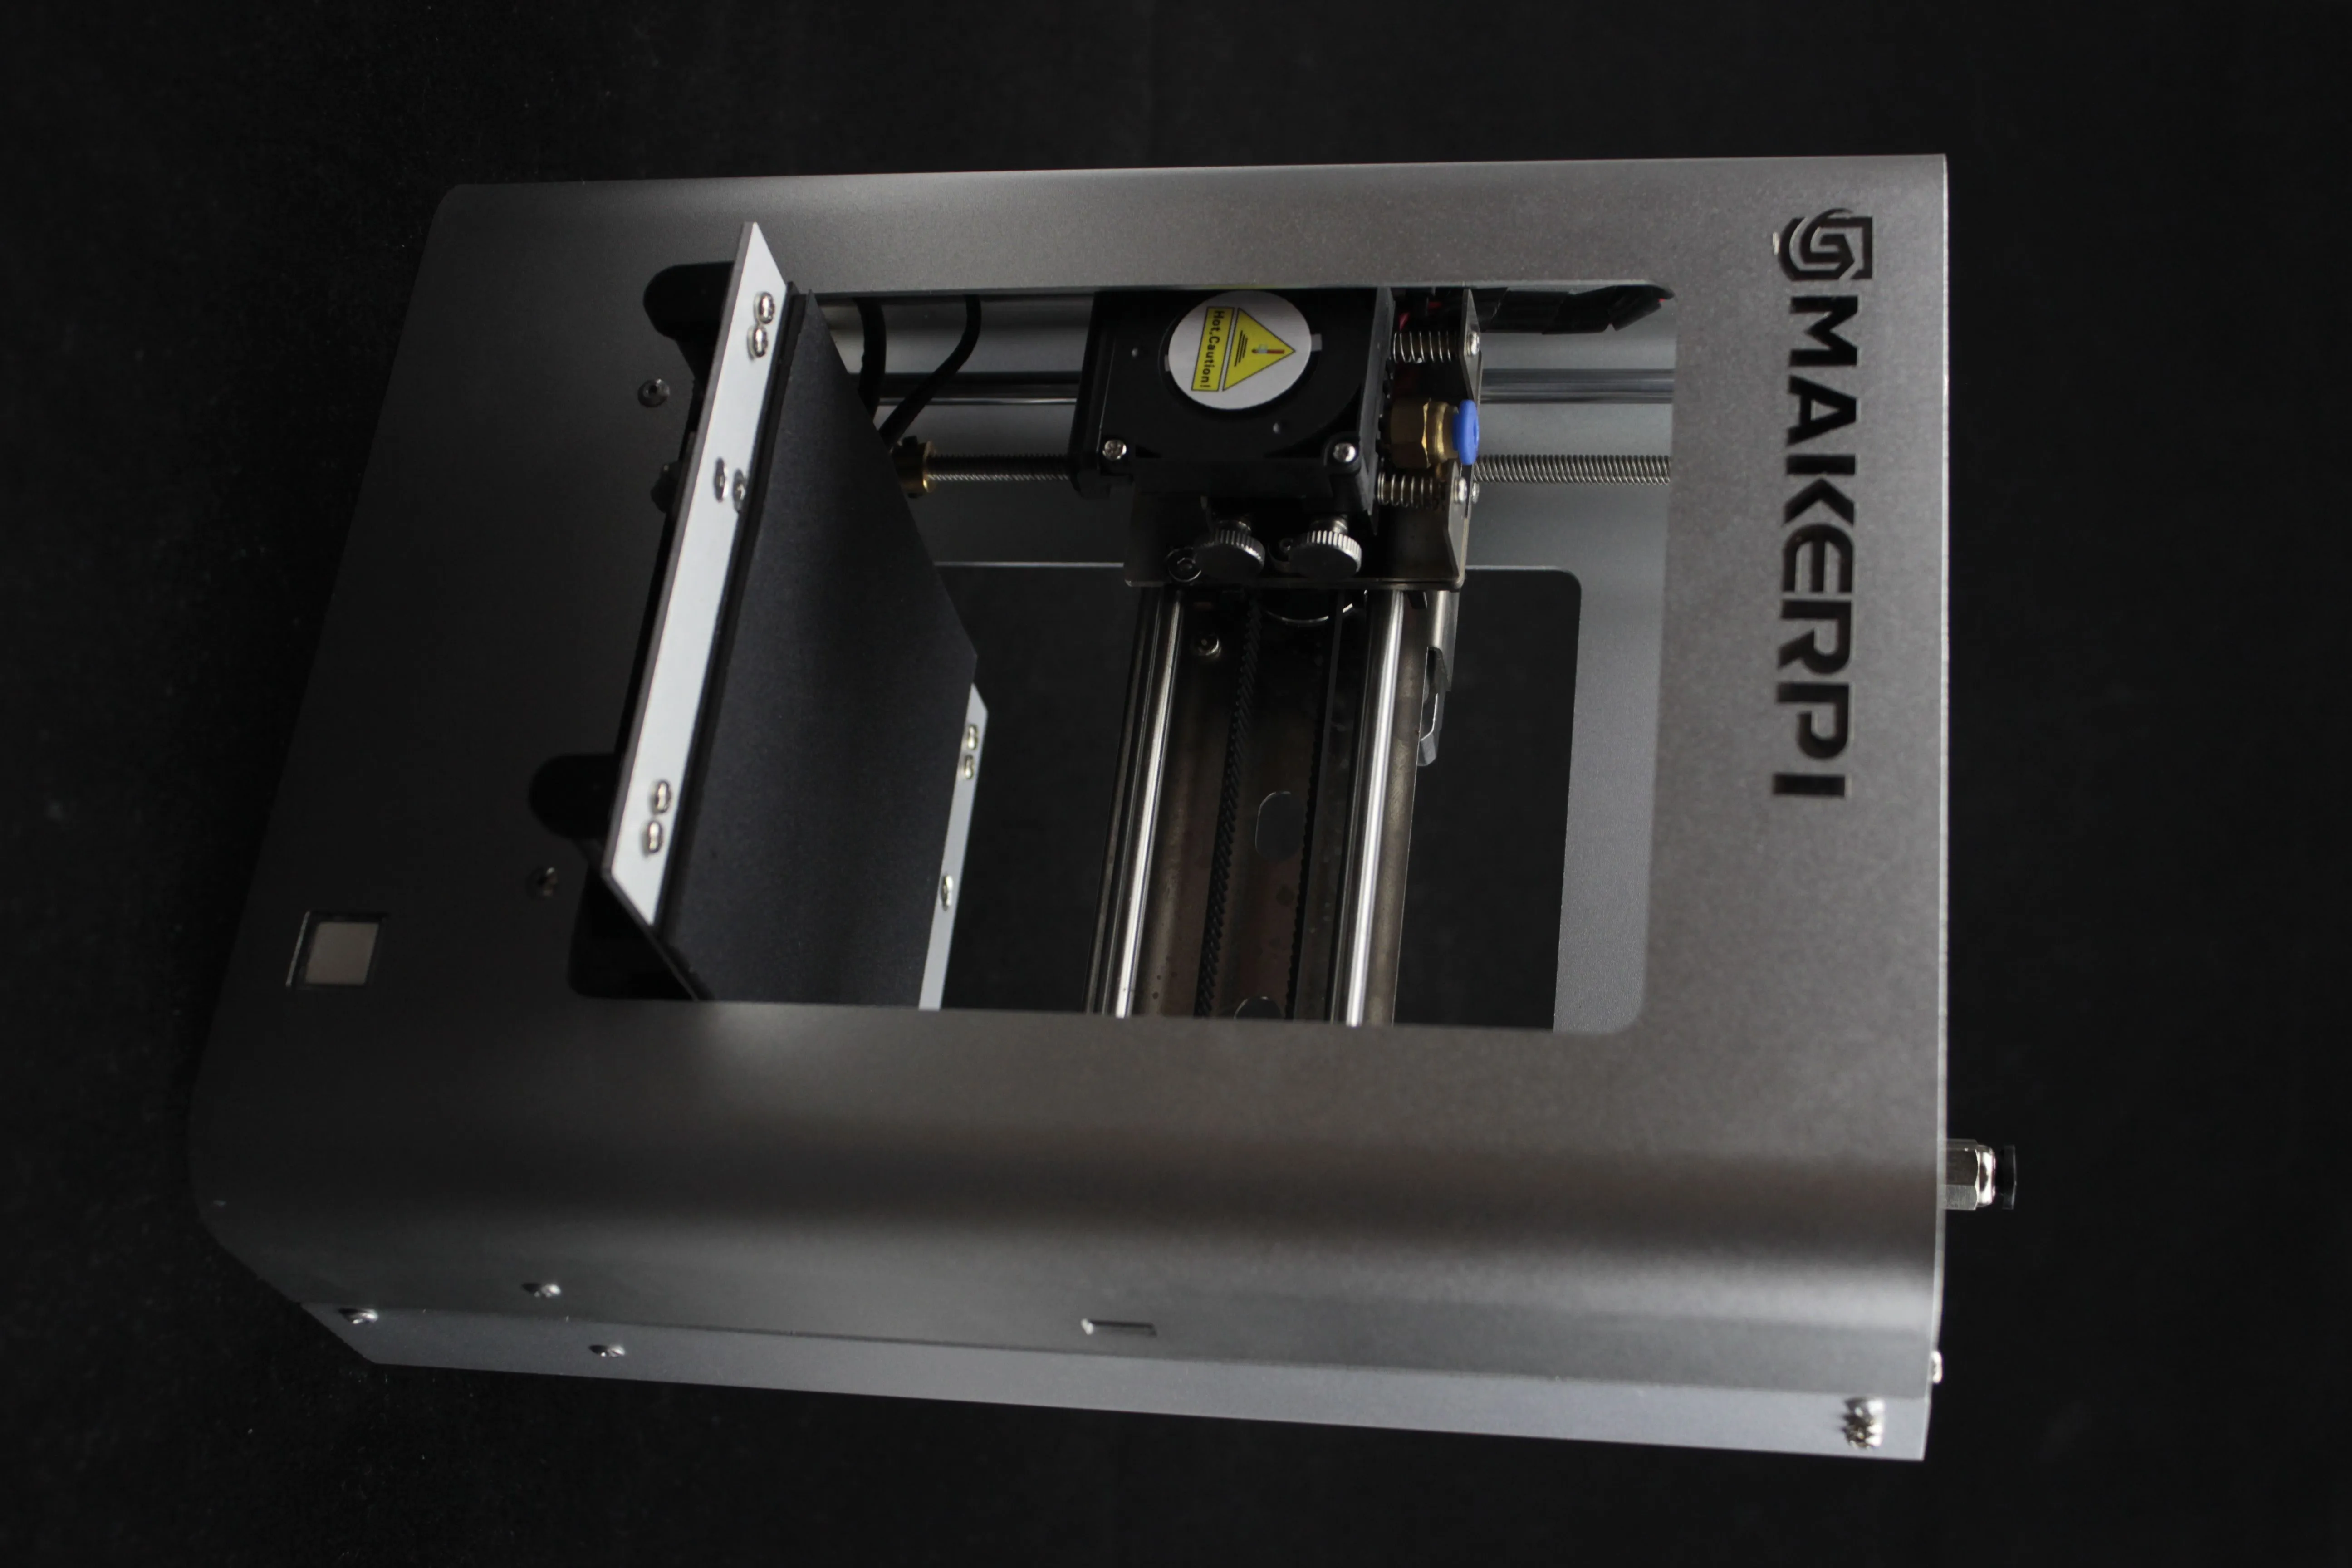 3D-принтер MakerPi M1